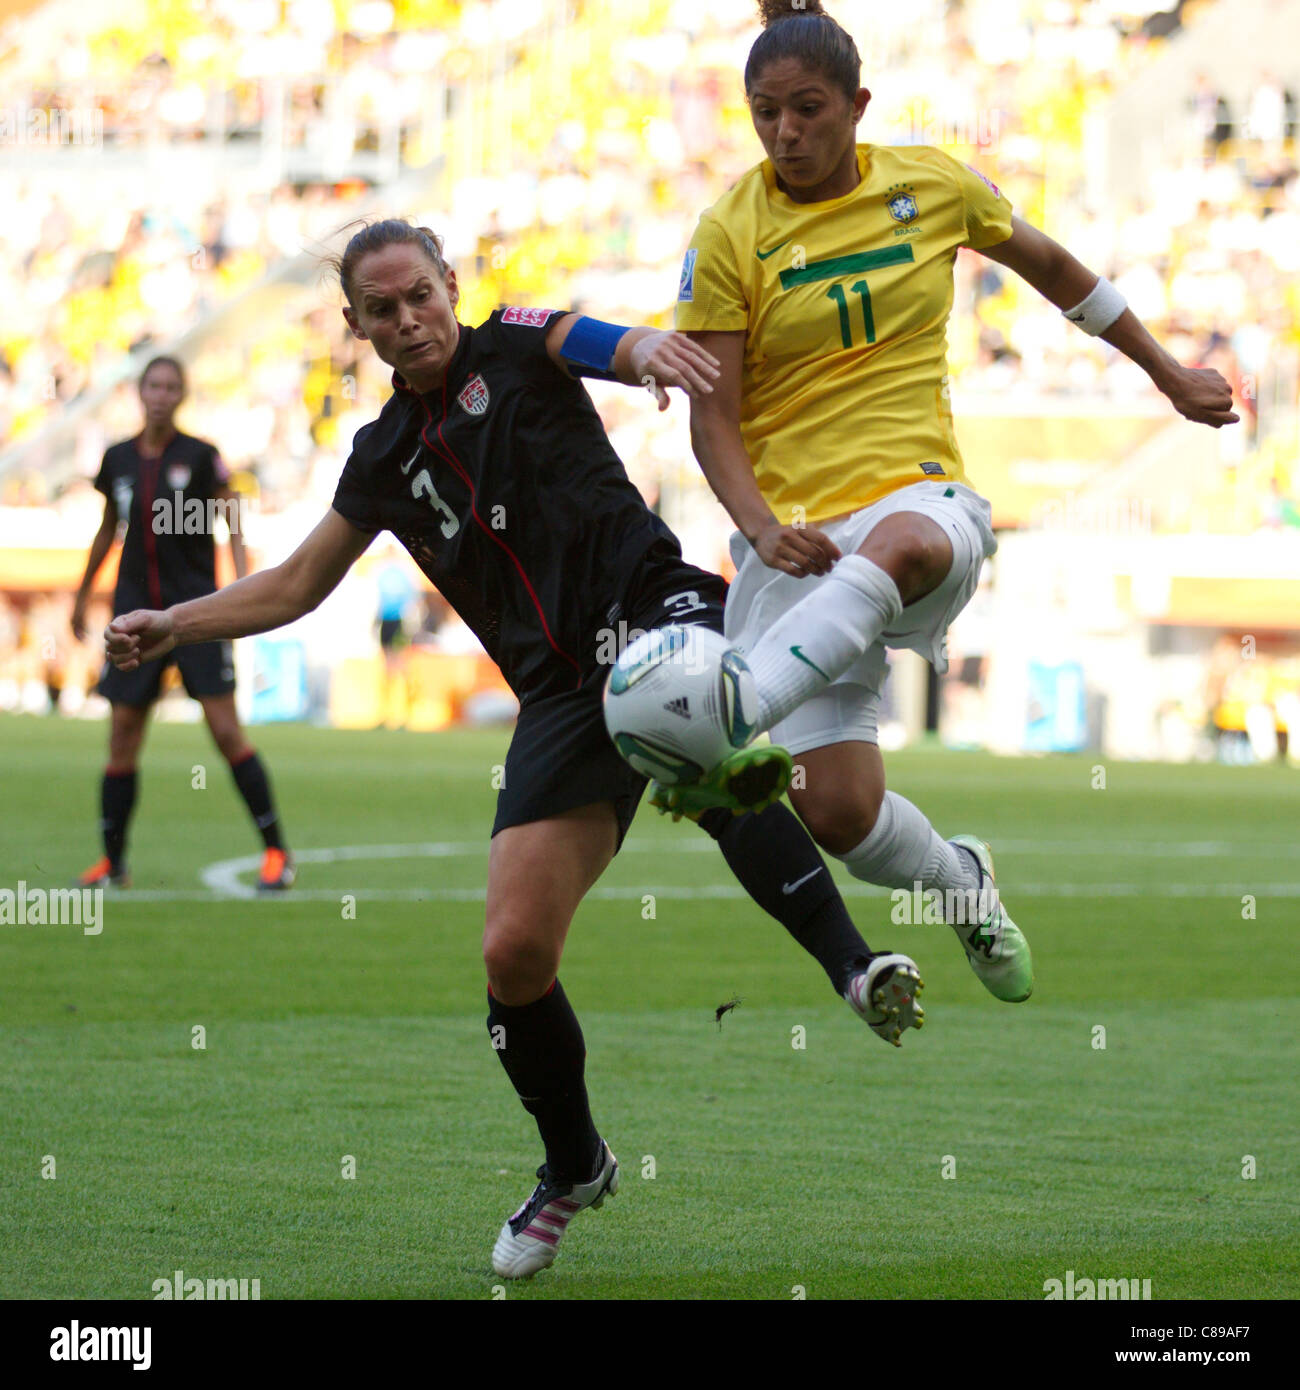 Chrétienne du Brésil (R) de la balle avant de Christie Rampone de l'USA (L) au cours d'une Coupe du Monde féminine 2011 Quart de finale. Banque D'Images